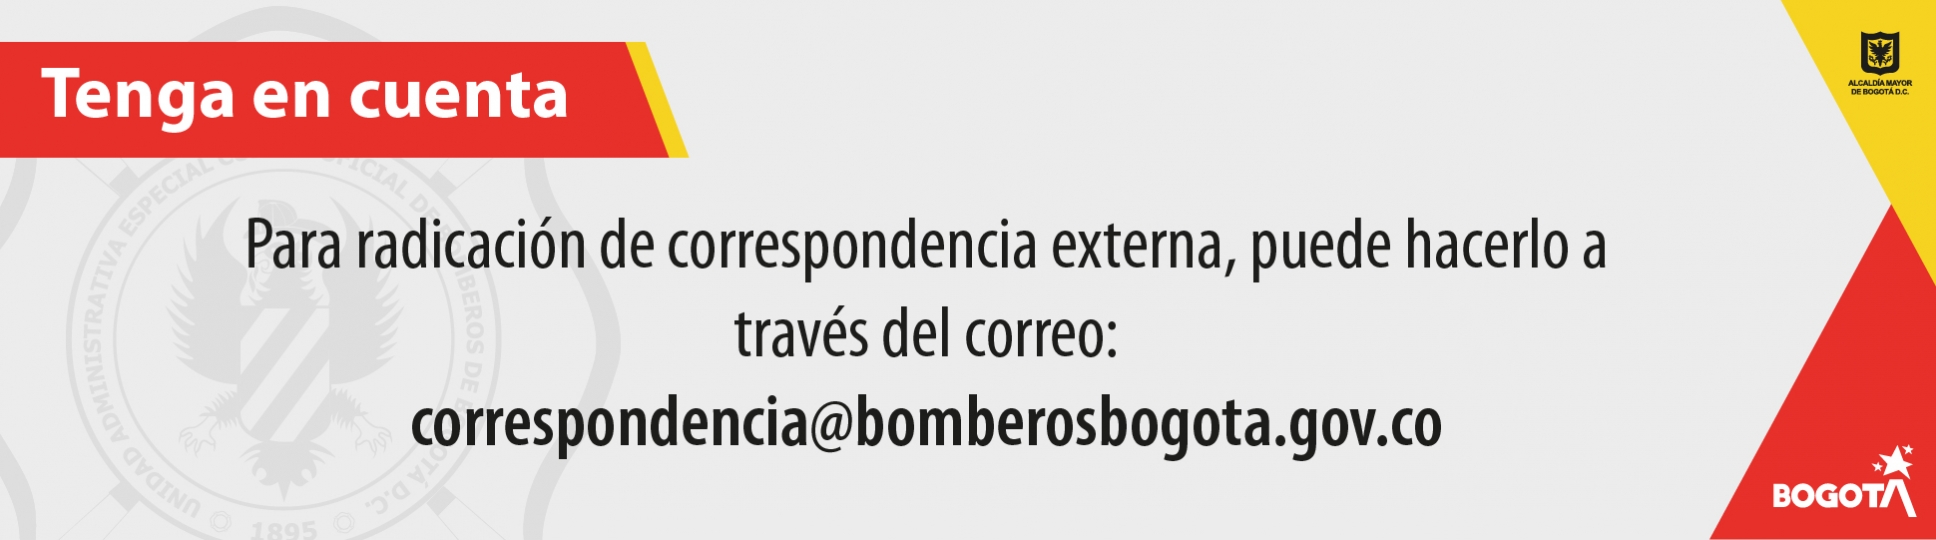 correspondencia@bomberosbogota.gov.co